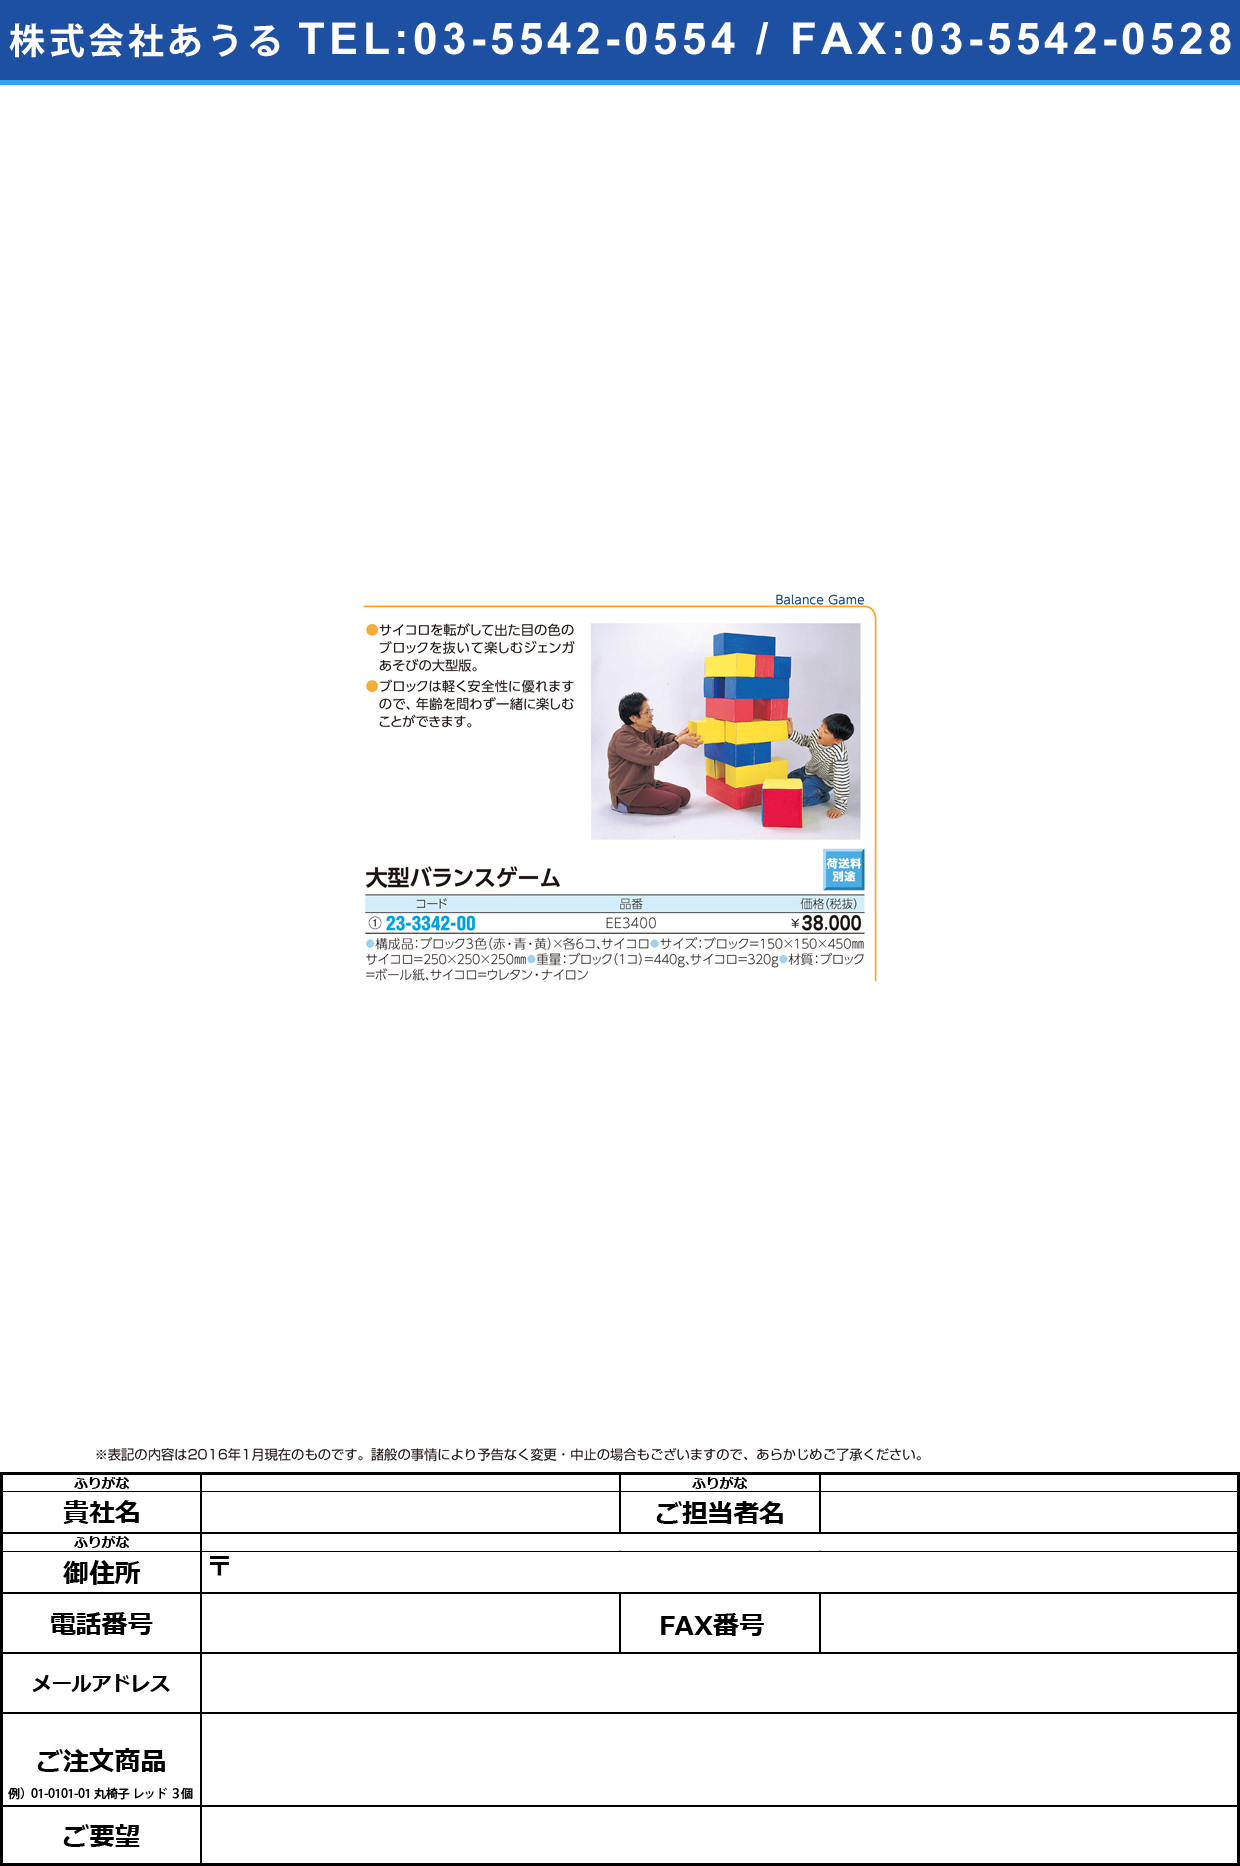 (23-3342-00)大型バランスゲーム（ジェンガ） ｵｵｶﾞﾀﾊﾞﾗﾝｽｹﾞｰﾑｼﾞｪﾝｶﾞ EE3400【1組単位】【2016年カタログ商品】